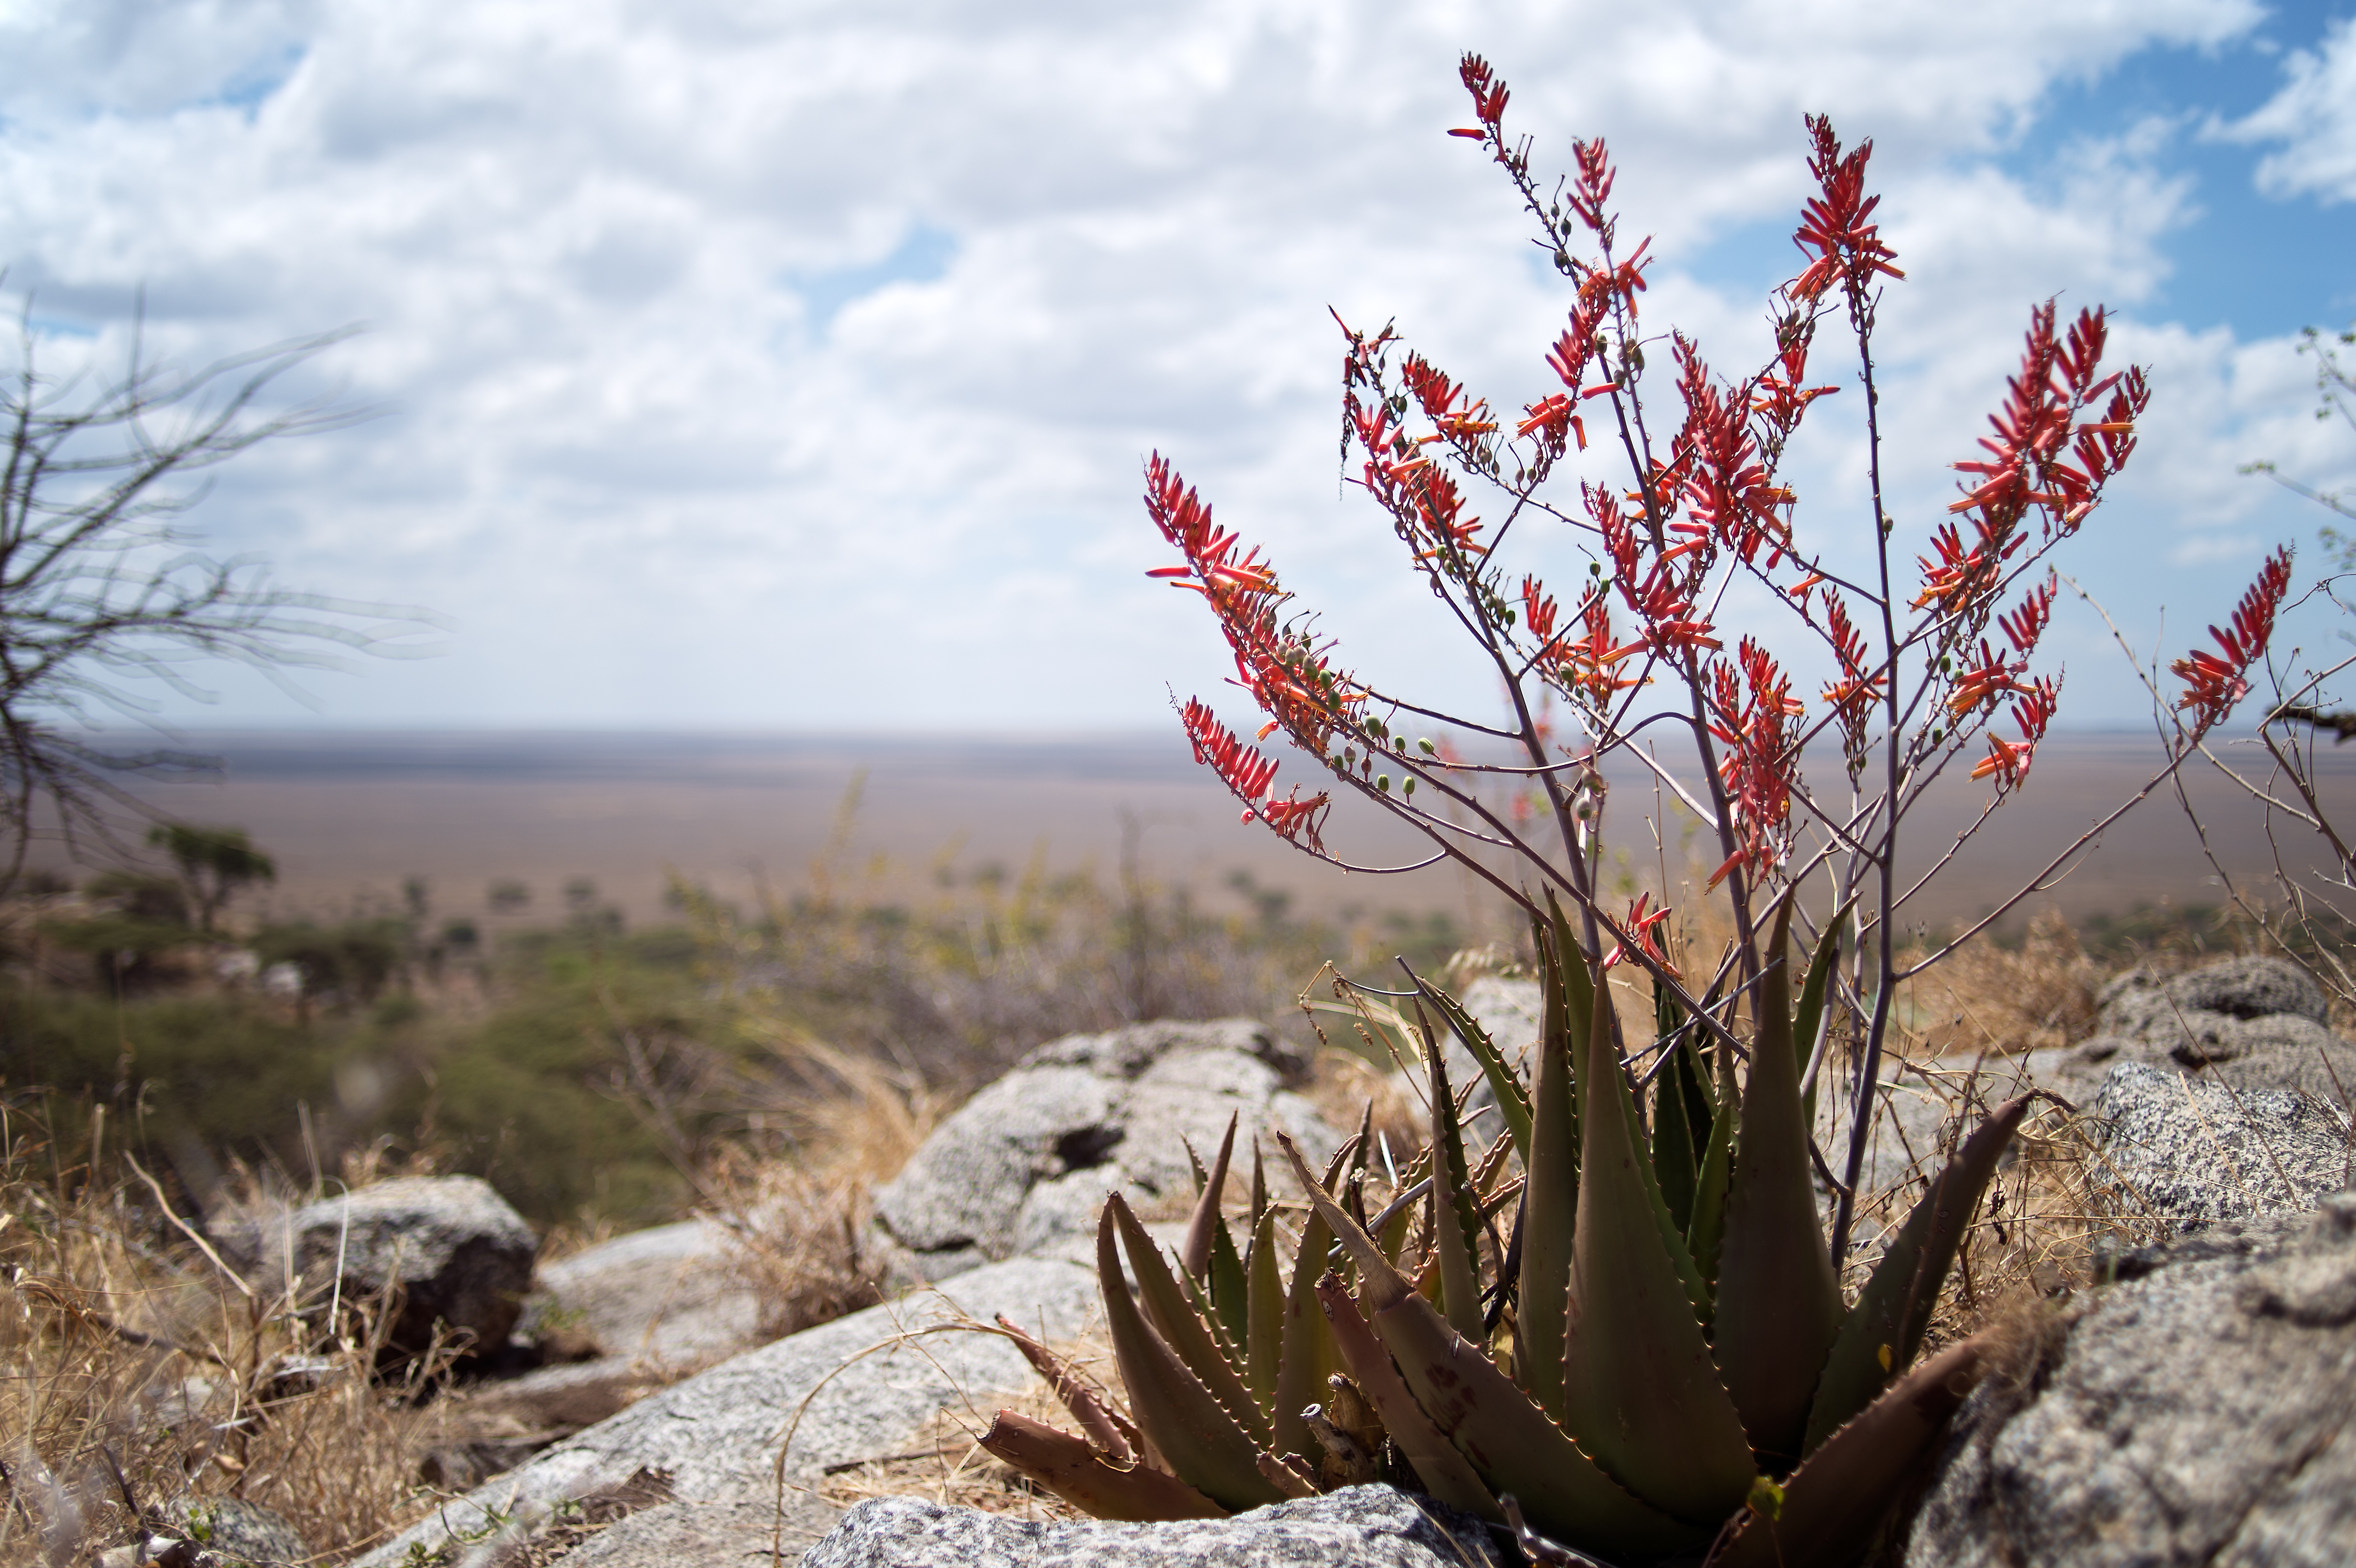 Das Bild zeigt eine Pflanze mit roten Blüten in einer wüstenähnlichen Umgebung. 